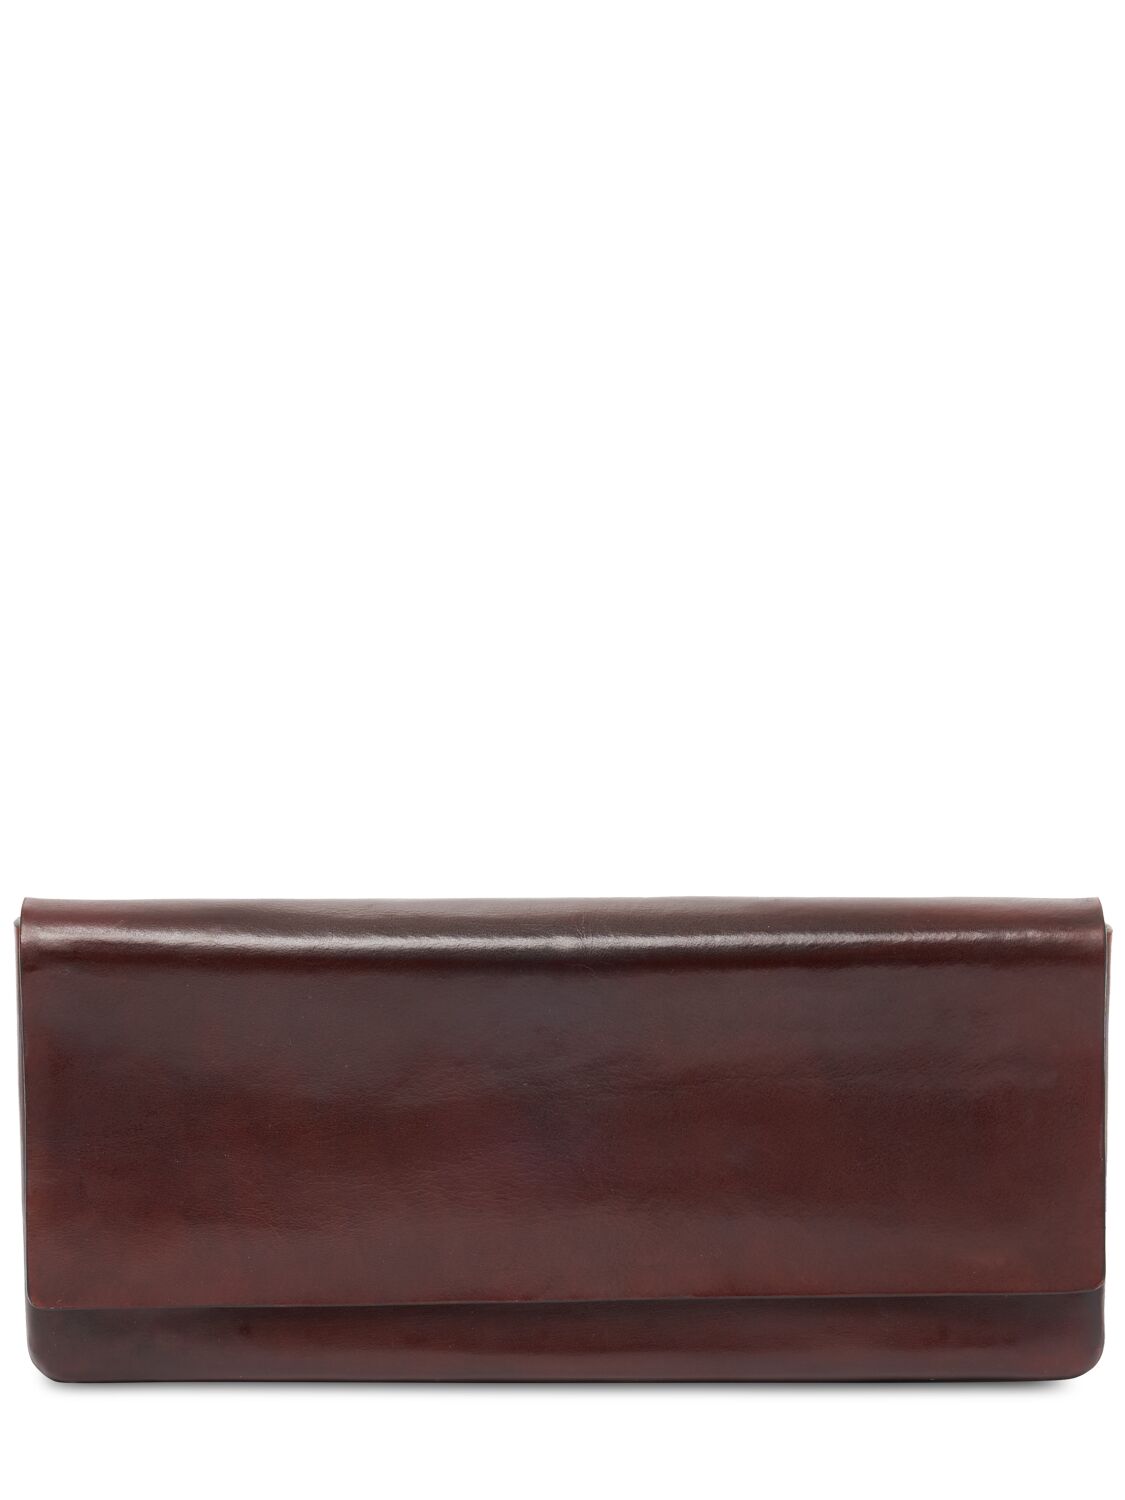 Max Mara Leather Clutch In Dark Brown